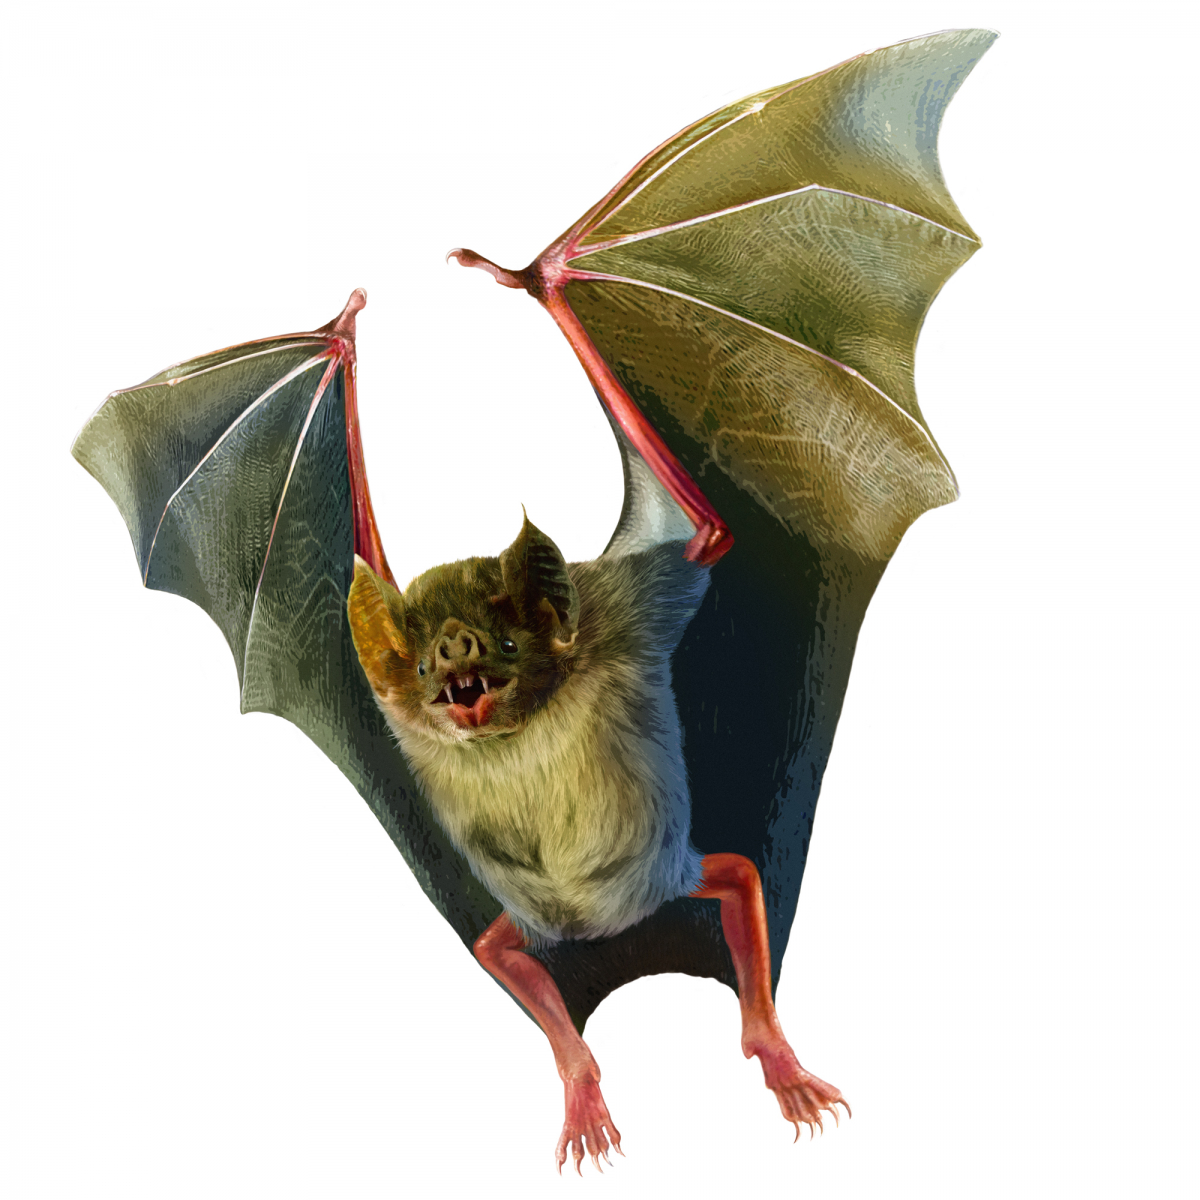 La chauve-souris vampire (Desmodus rotundus) est le seul mammifère à se nourrir exclusivement de sang. C’est un prédateur nocturne. L’anticoagulant qui se trouve dans sa salive, appelé « draculine », nous rappelle un certain personnage légendaire.